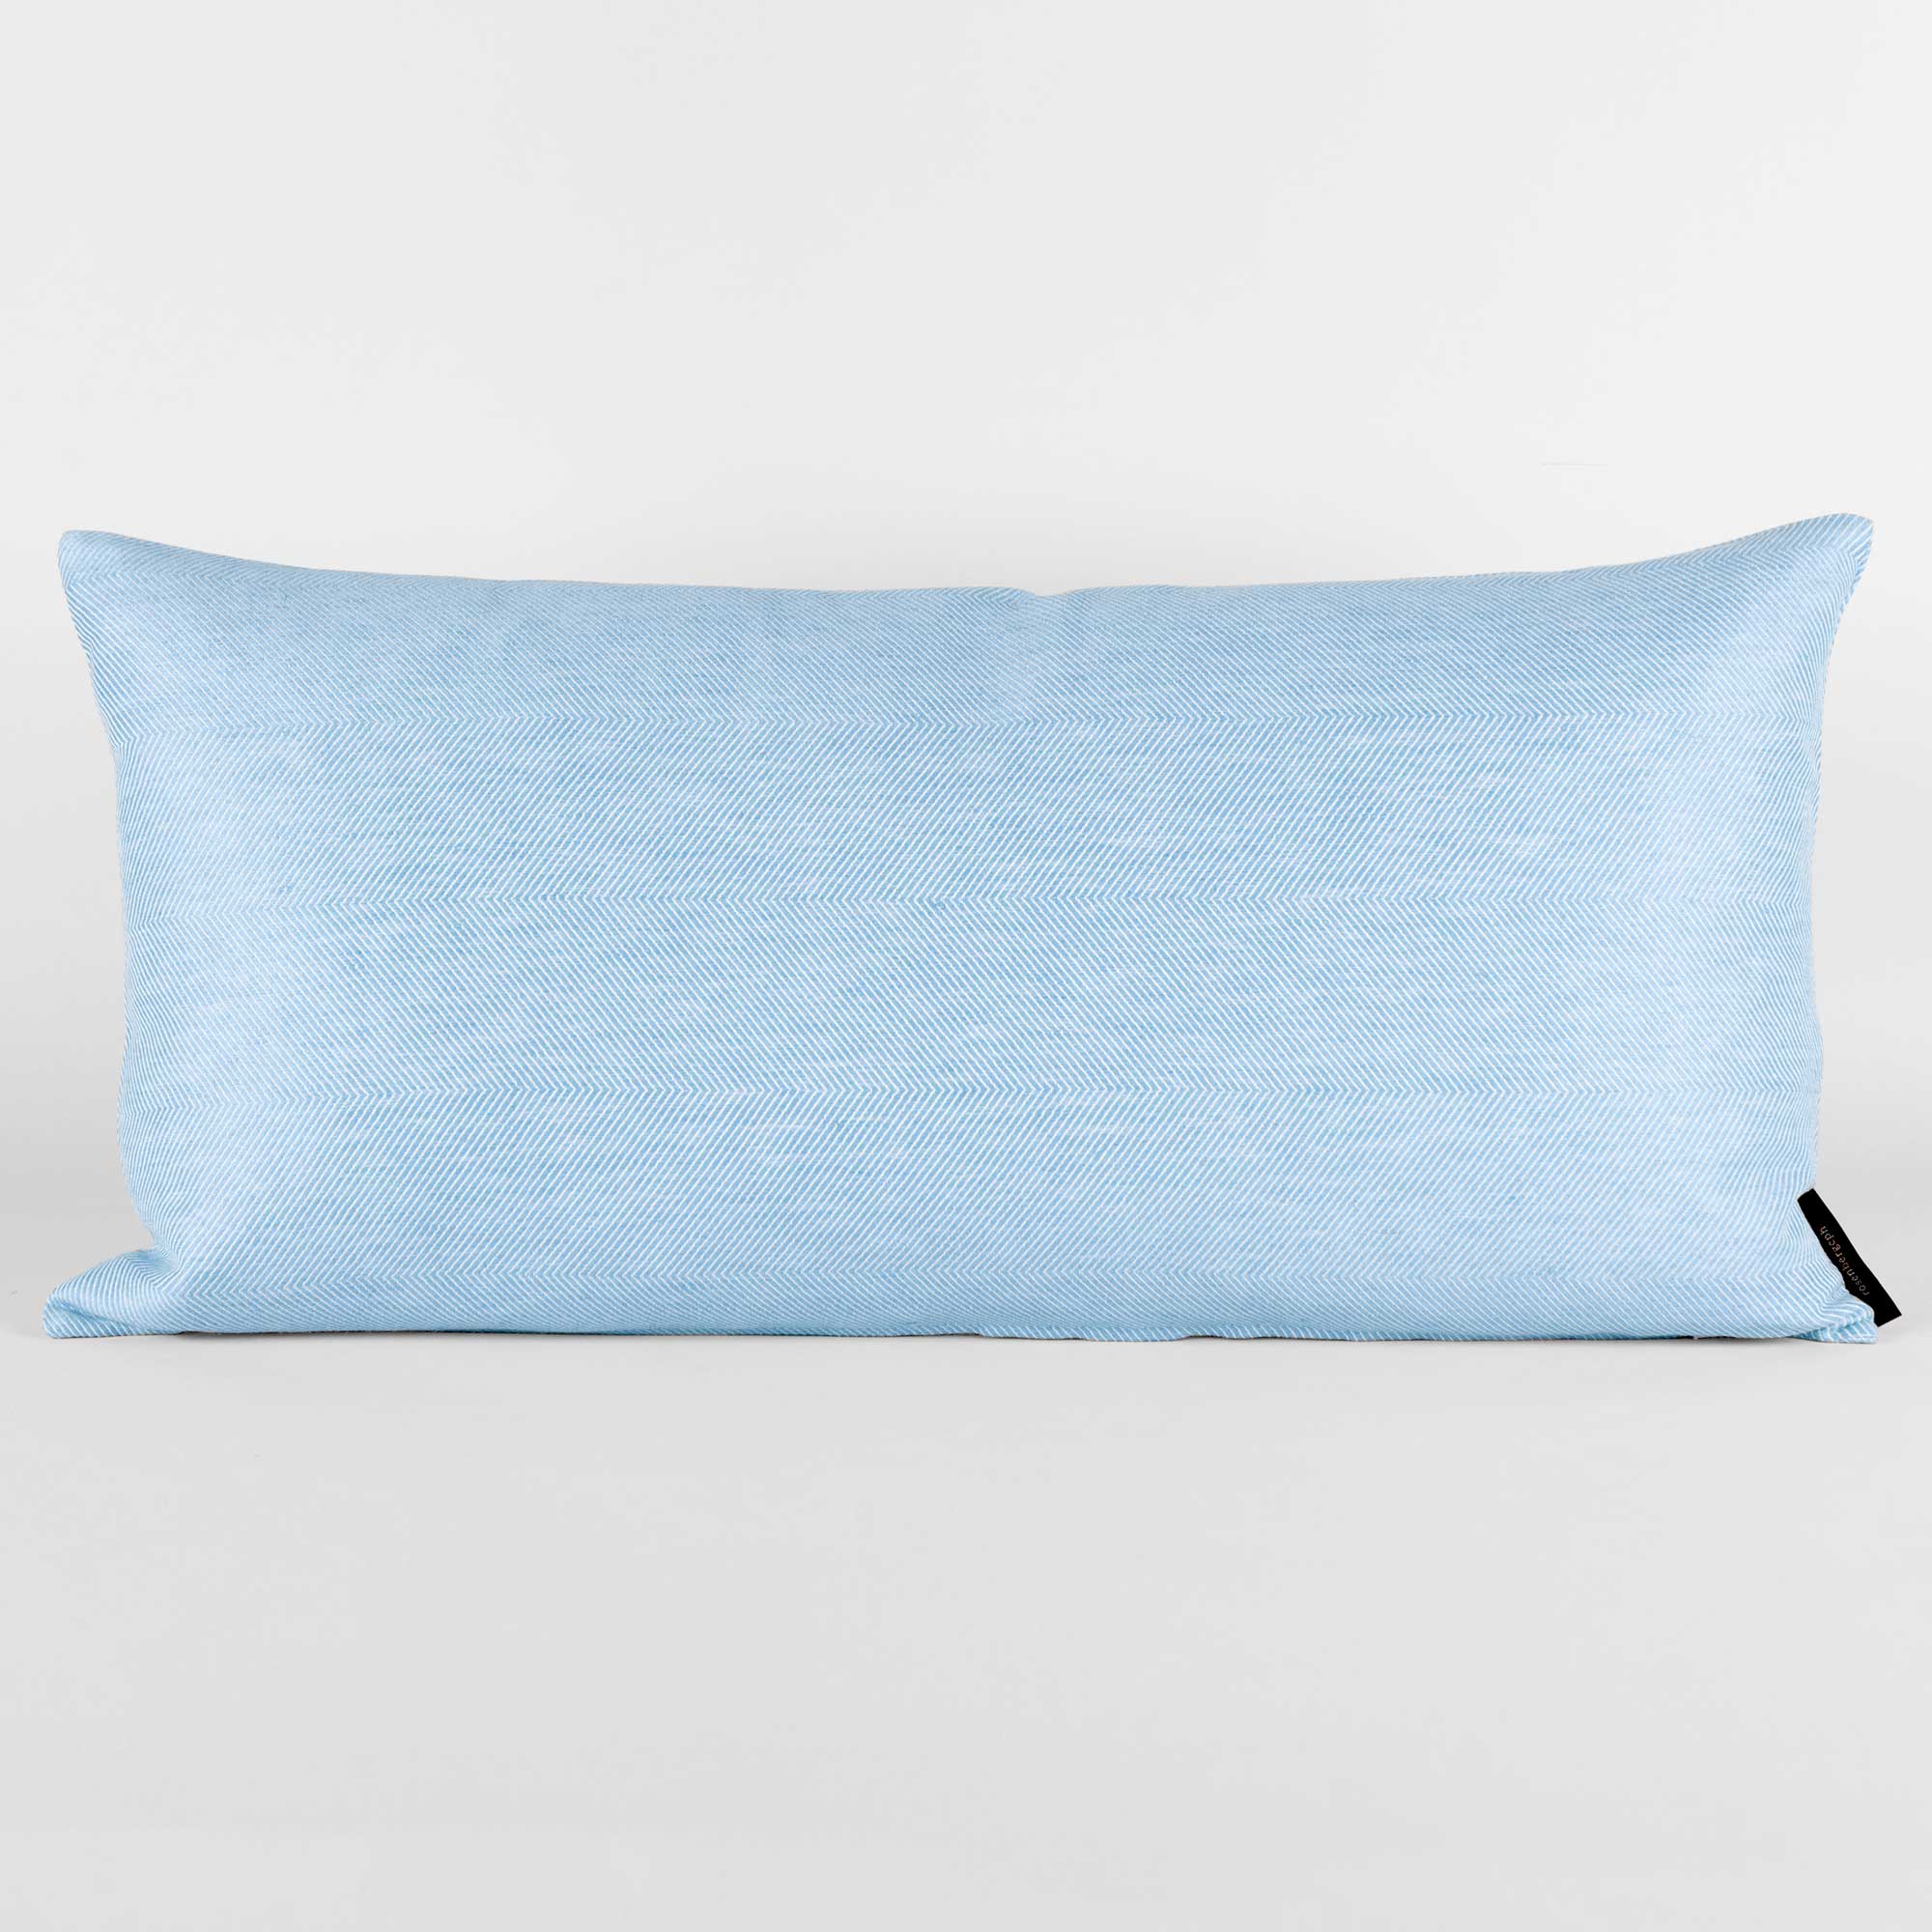 Rectangular cushion linen/cotton Sky Blue, design by Anne Rosenberg, RosenbergCph